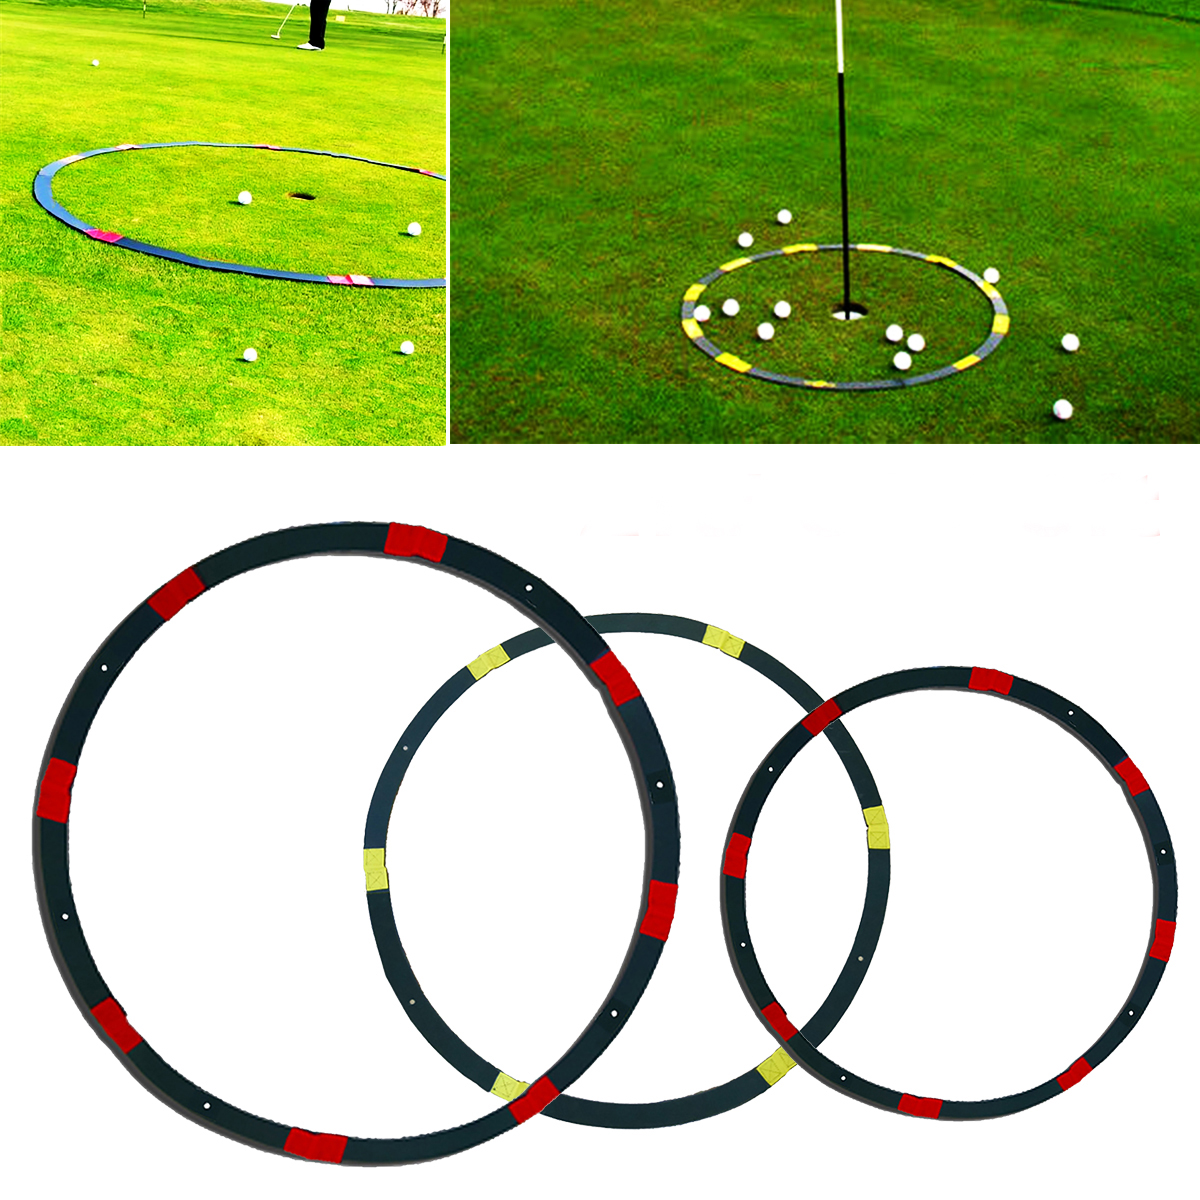 

2/3 / 6ft Портативный Eyeline Golf Target Circle Спорт Свинг Учебное пособие Практика Golf Инструмент Аксессуары